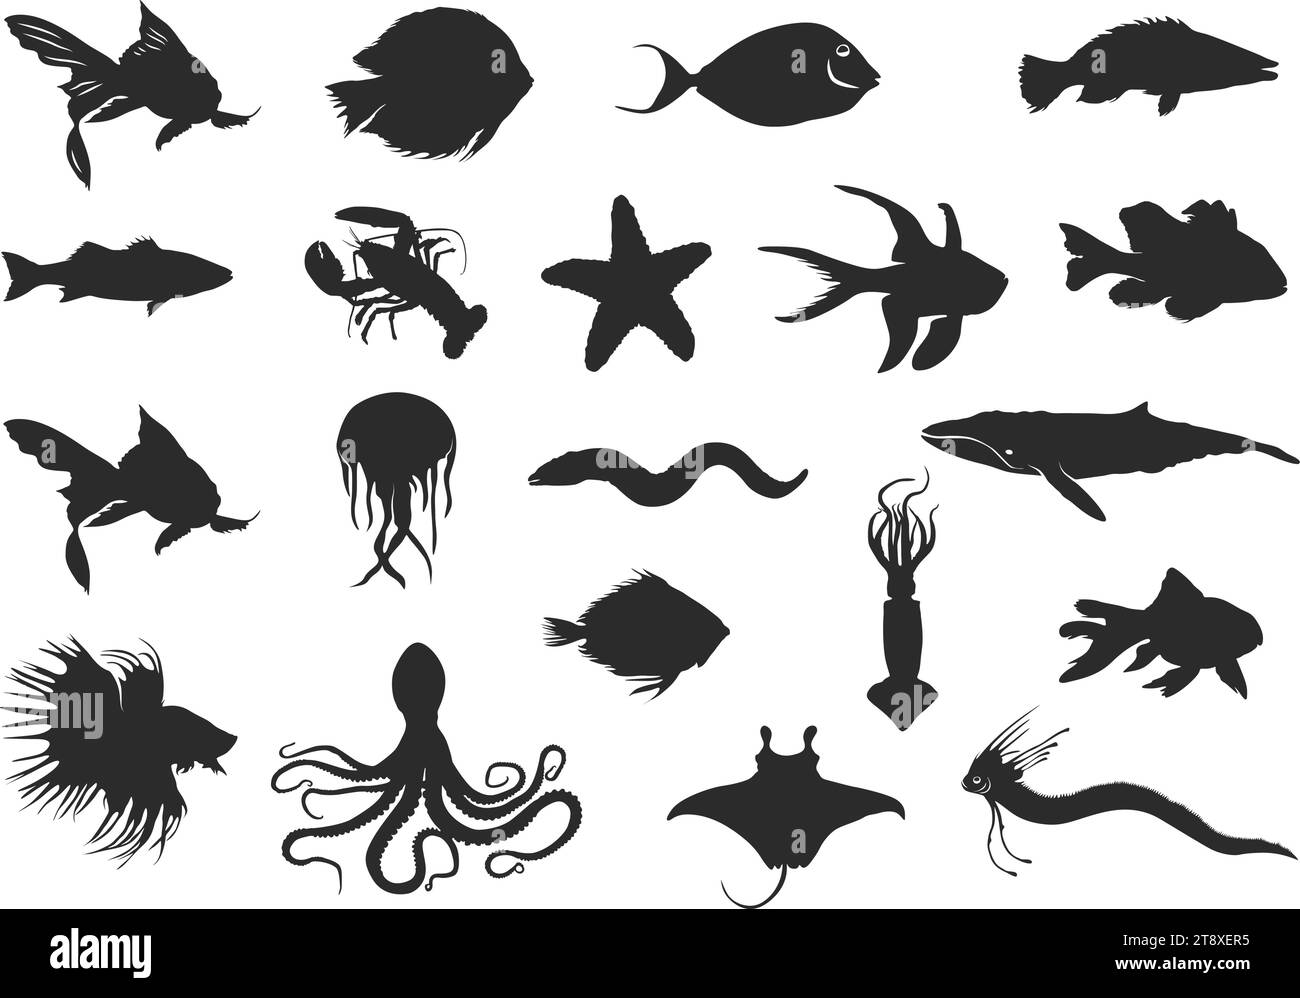 Seefisch Silhouette, Fisch Clipart, Fisch Silhouette, Salzwasser Fisch Silhouette, Ozean Fisch Silhouette, Meeresfisch-Vektor Stock Vektor